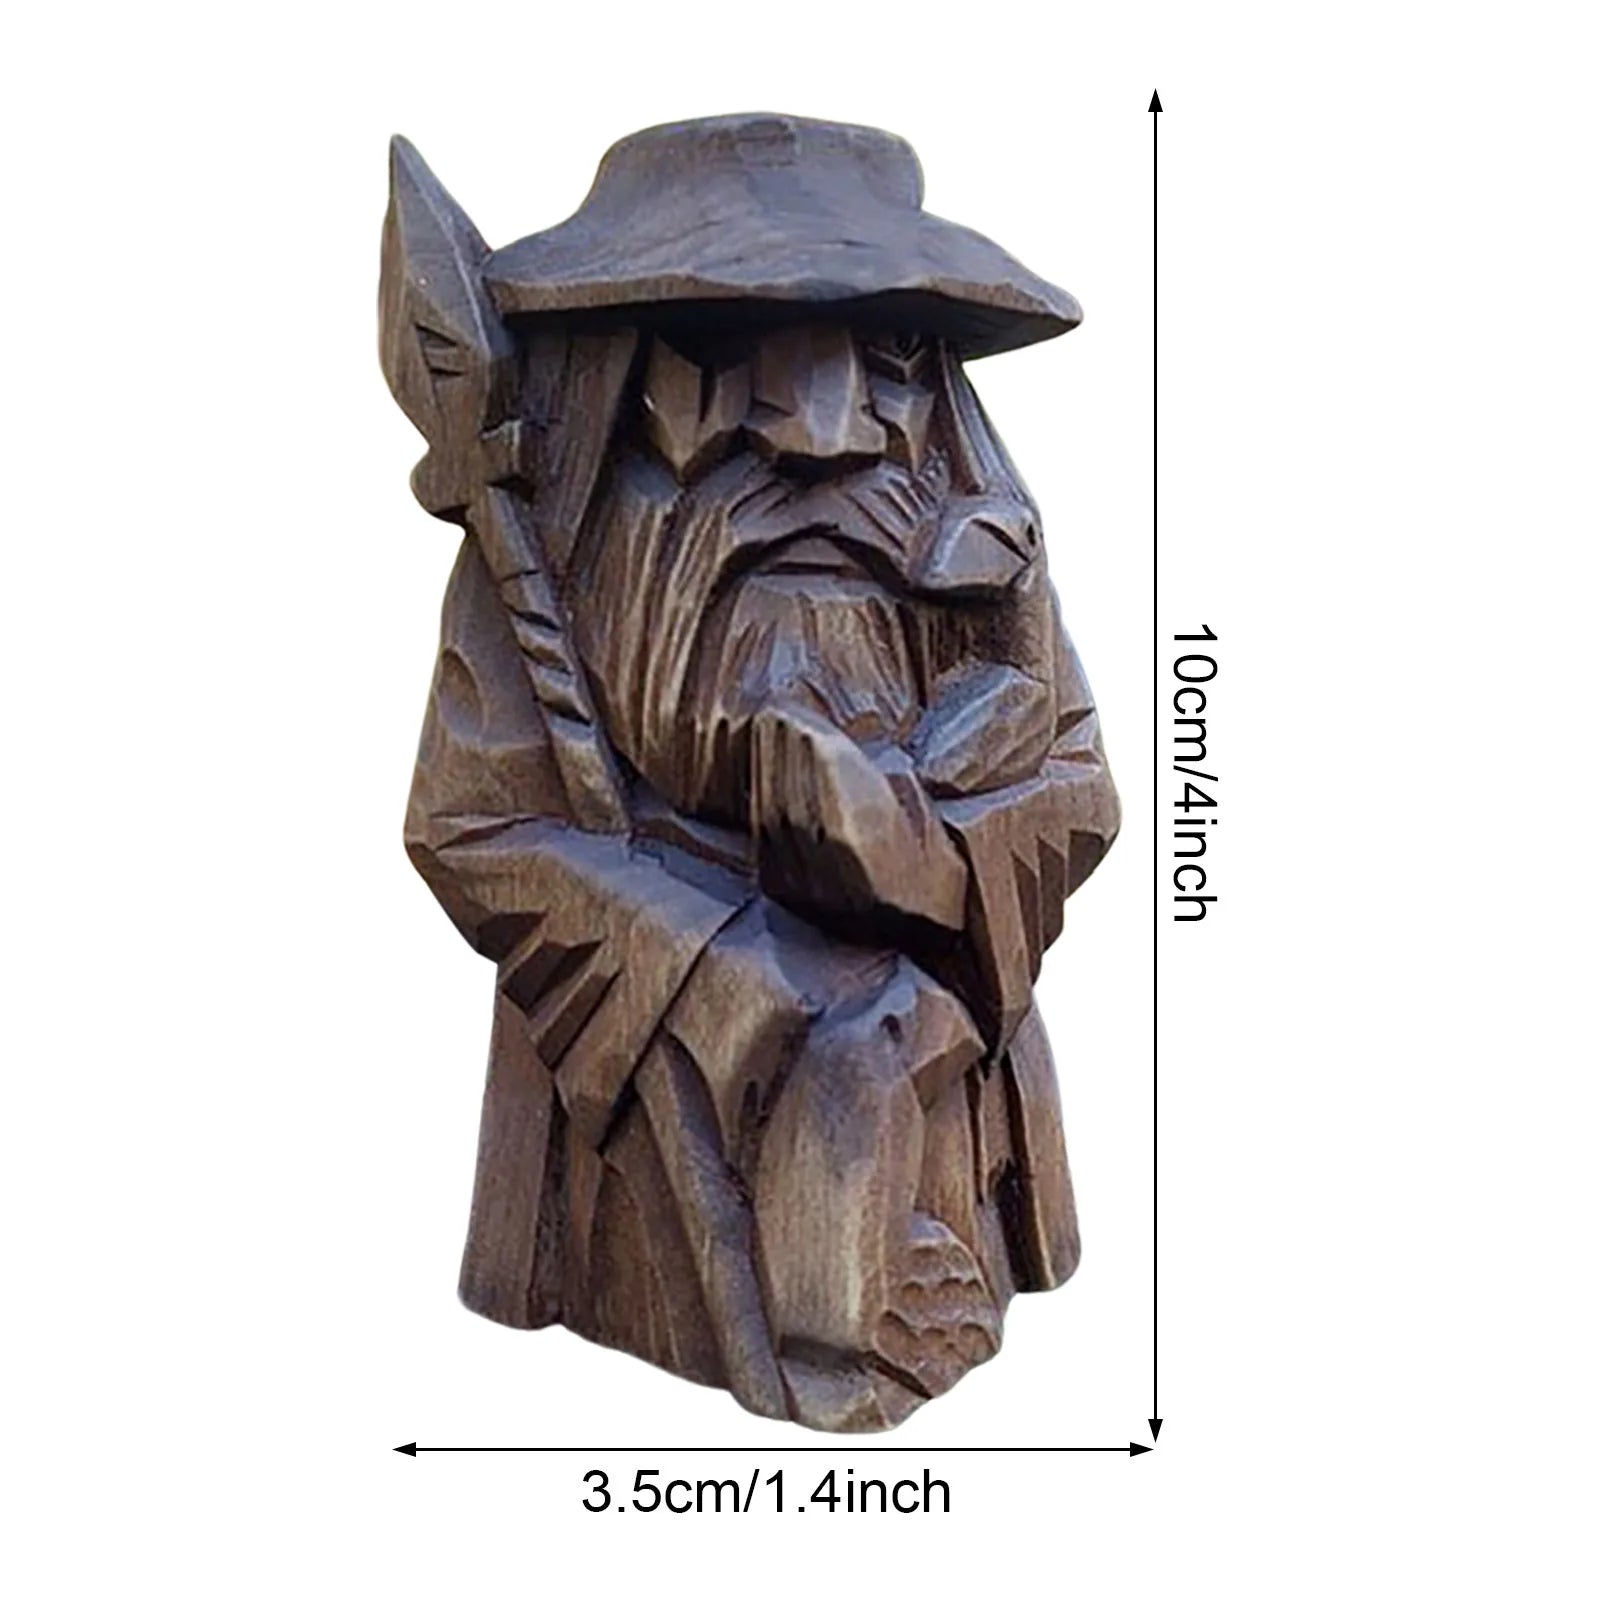 Odin Thor Tyr ulfhednar norska hedniska harts viking staty nordisk hednisk harts ornament konst för hemma utomhus trädgård dekoration